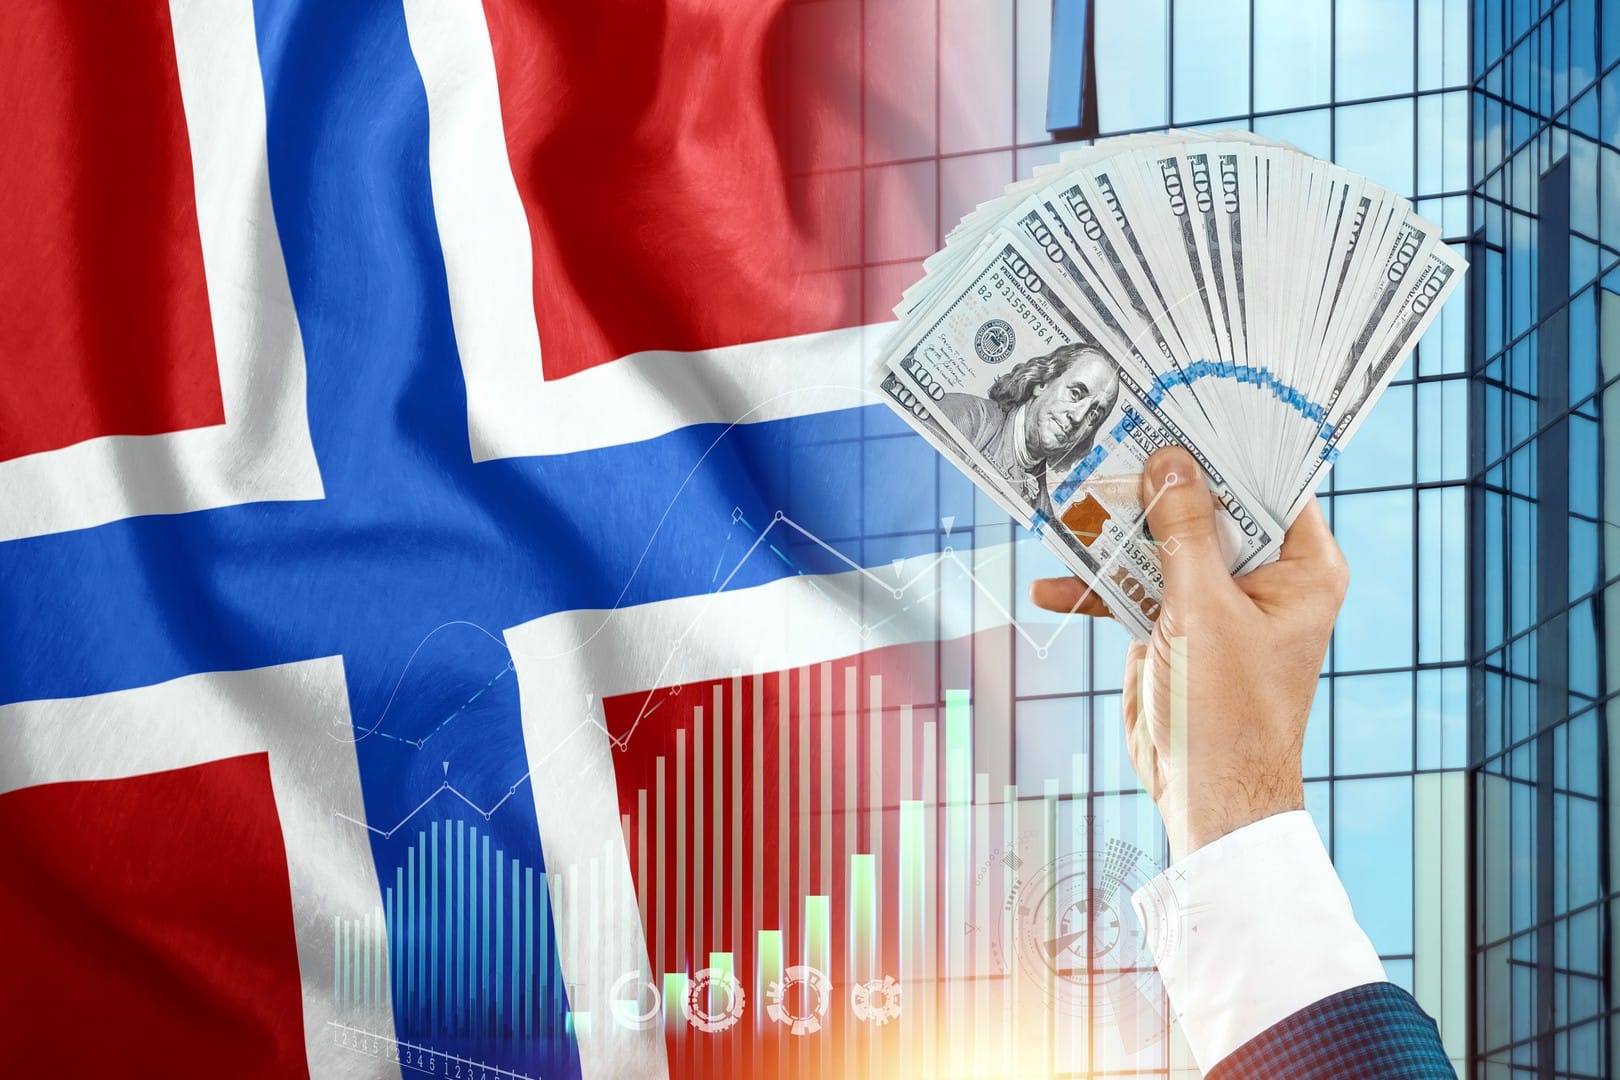 Fotografia reklamująca usługi firmy KDF-Podatki w zakresie rozliczania podatków z Norwegii. Na zdjęciu widać flagę Norwegii. Obok znajdują się trzy zielone słupki zysku wznoszące się do góry. Na pierwszym planie widać dłoń trzymającą banknoty koron norweskich. Grafika ma zachęcić do skorzystania z usług firmy w celu uzyskania zwrotu podatku z Norwegii i w efekcie zysku finansowego, co symbolizują elementy zdjęcia.